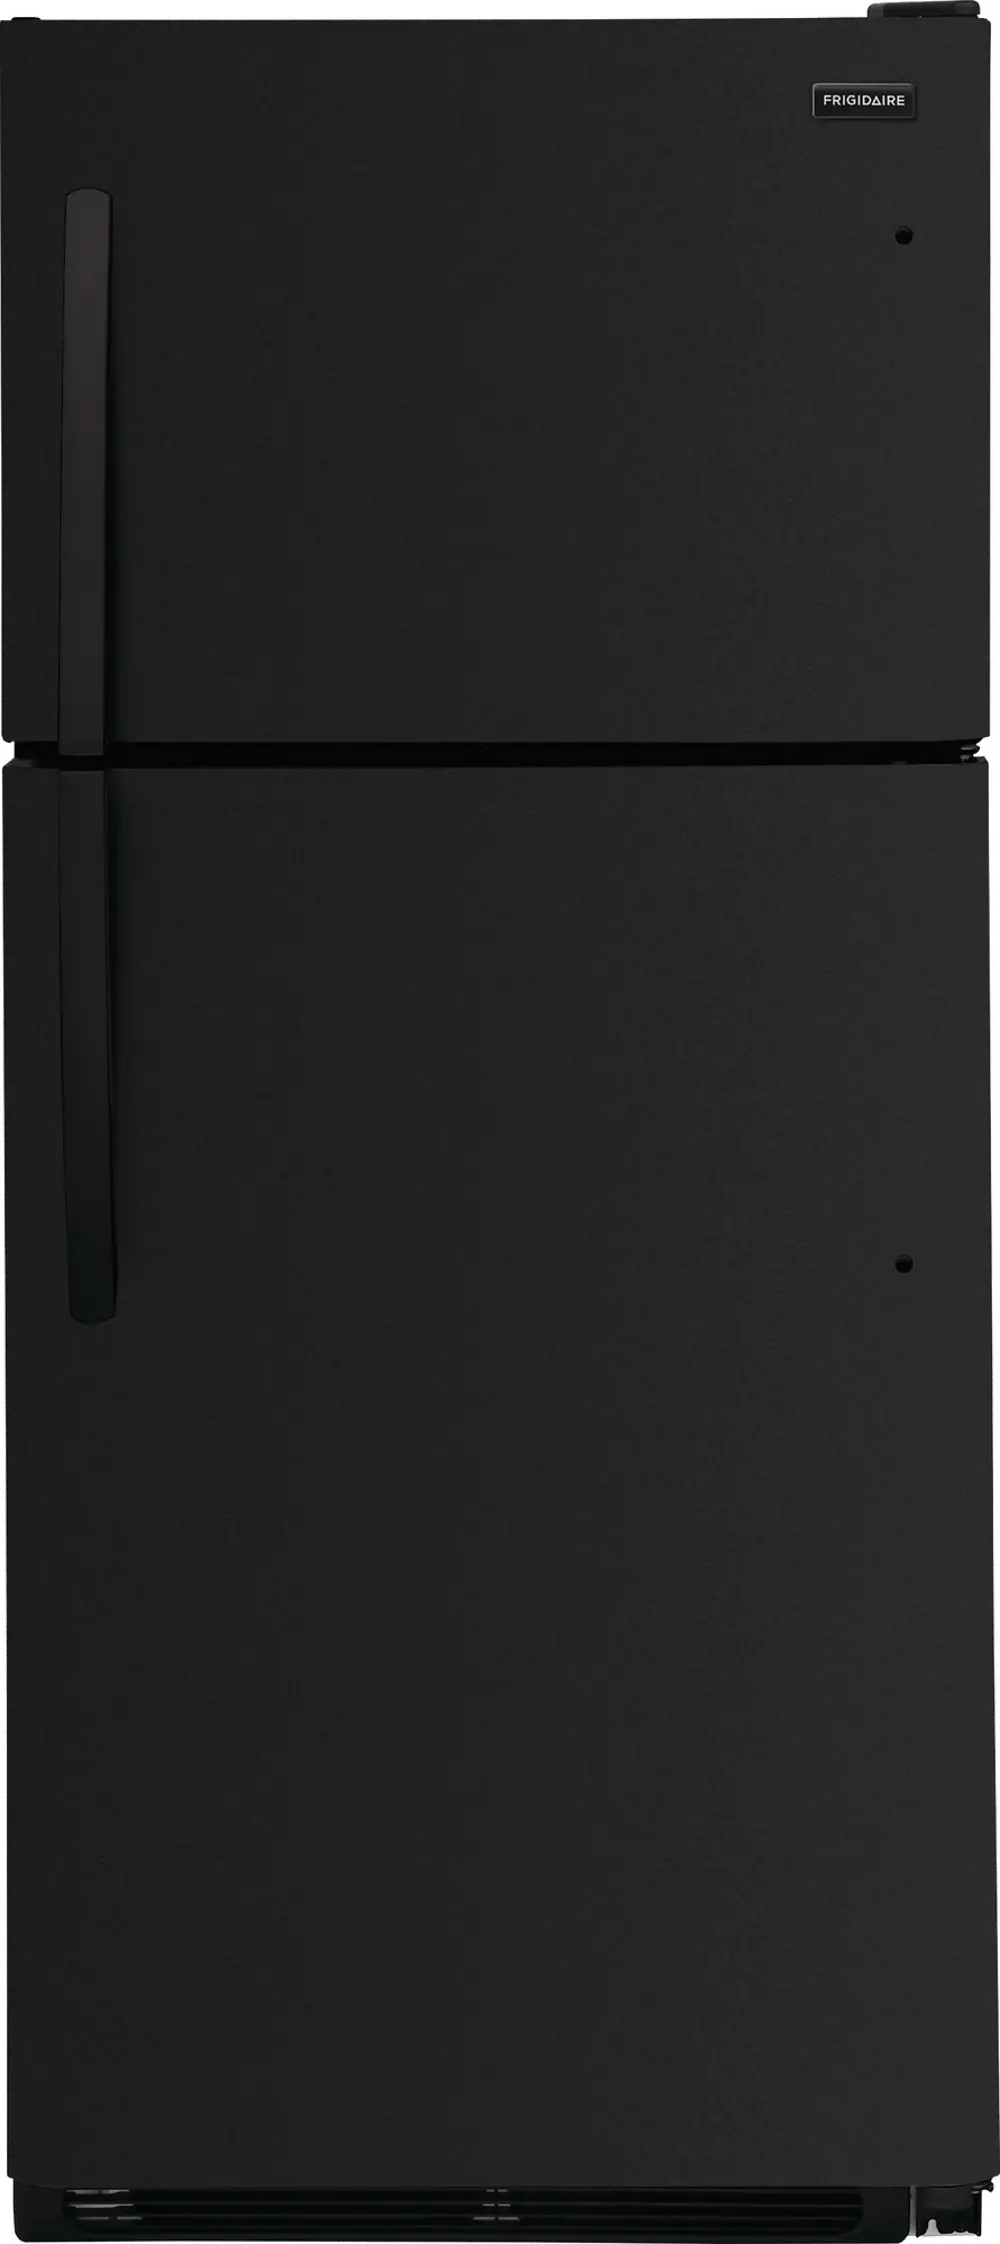 FRTD2021AB Frigidaire 20.5 cu ft Top Freezer Refrigerator - 30 W Black-1